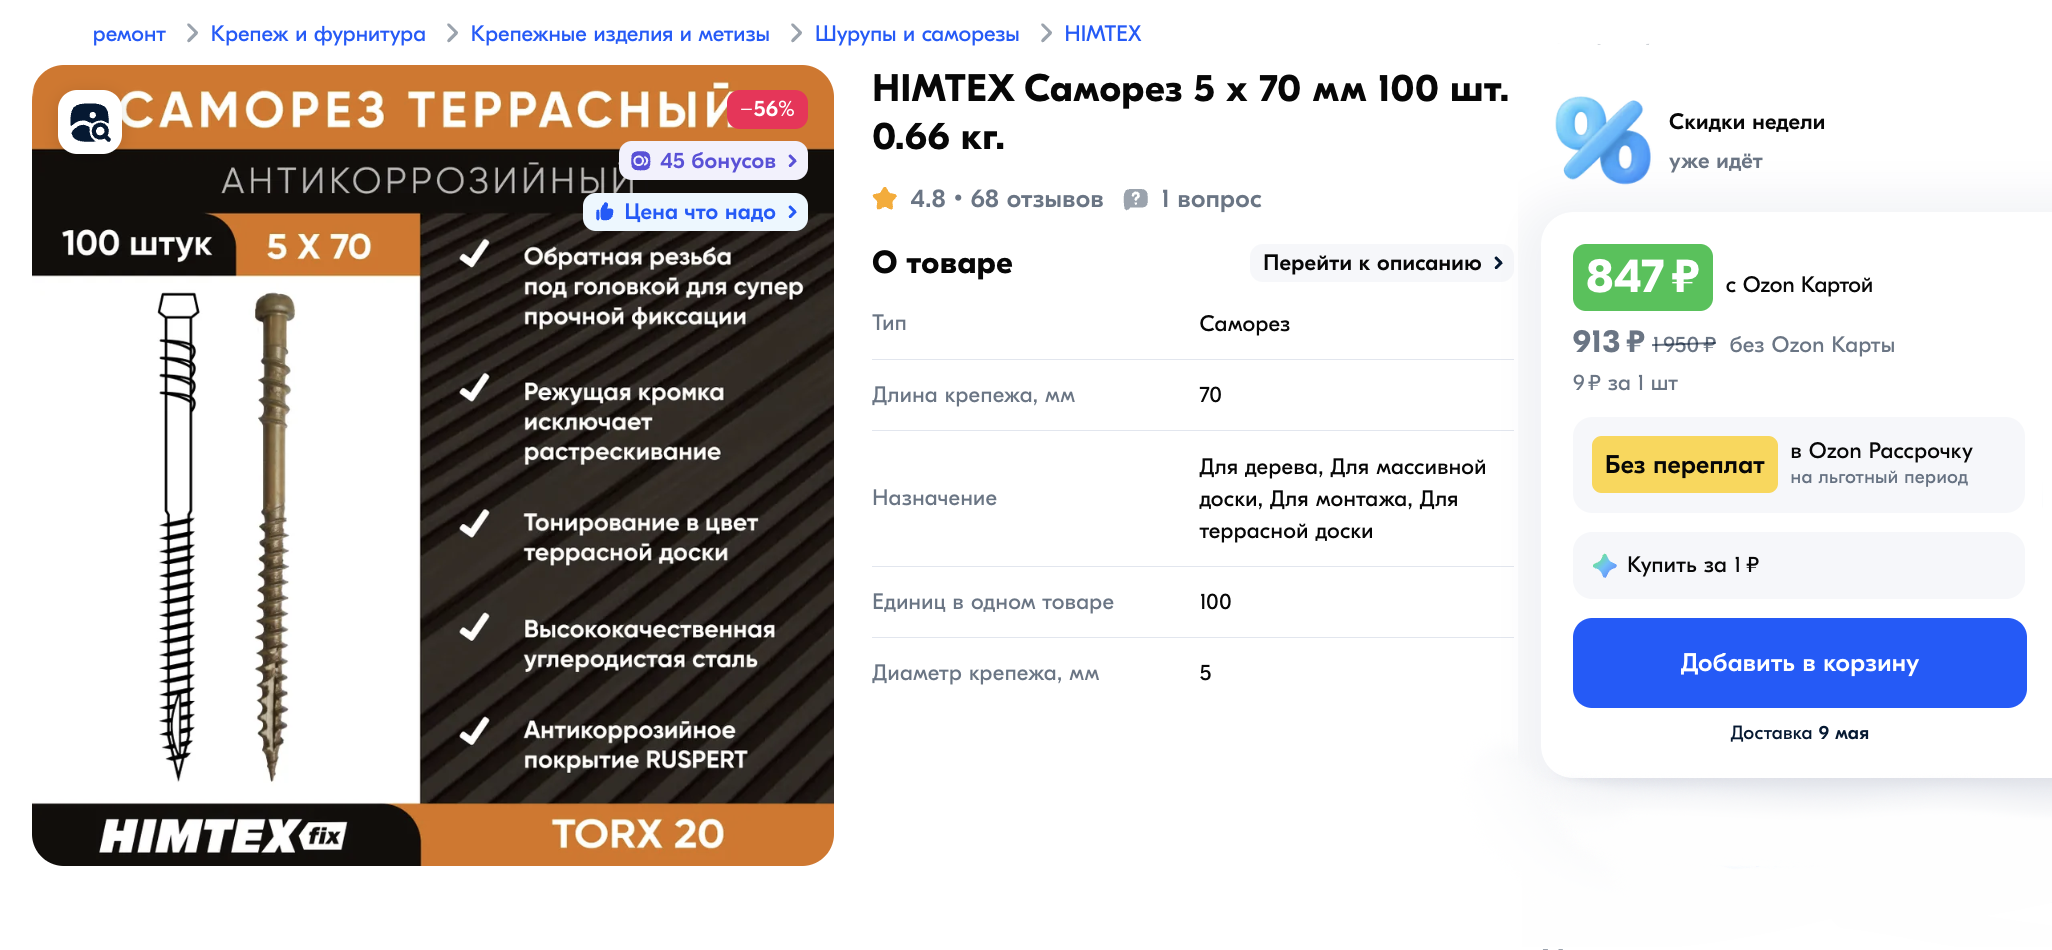 Саморезы для террасной доски. Цена — 847 ₽ за 100 штук. Источник: ozon.ru